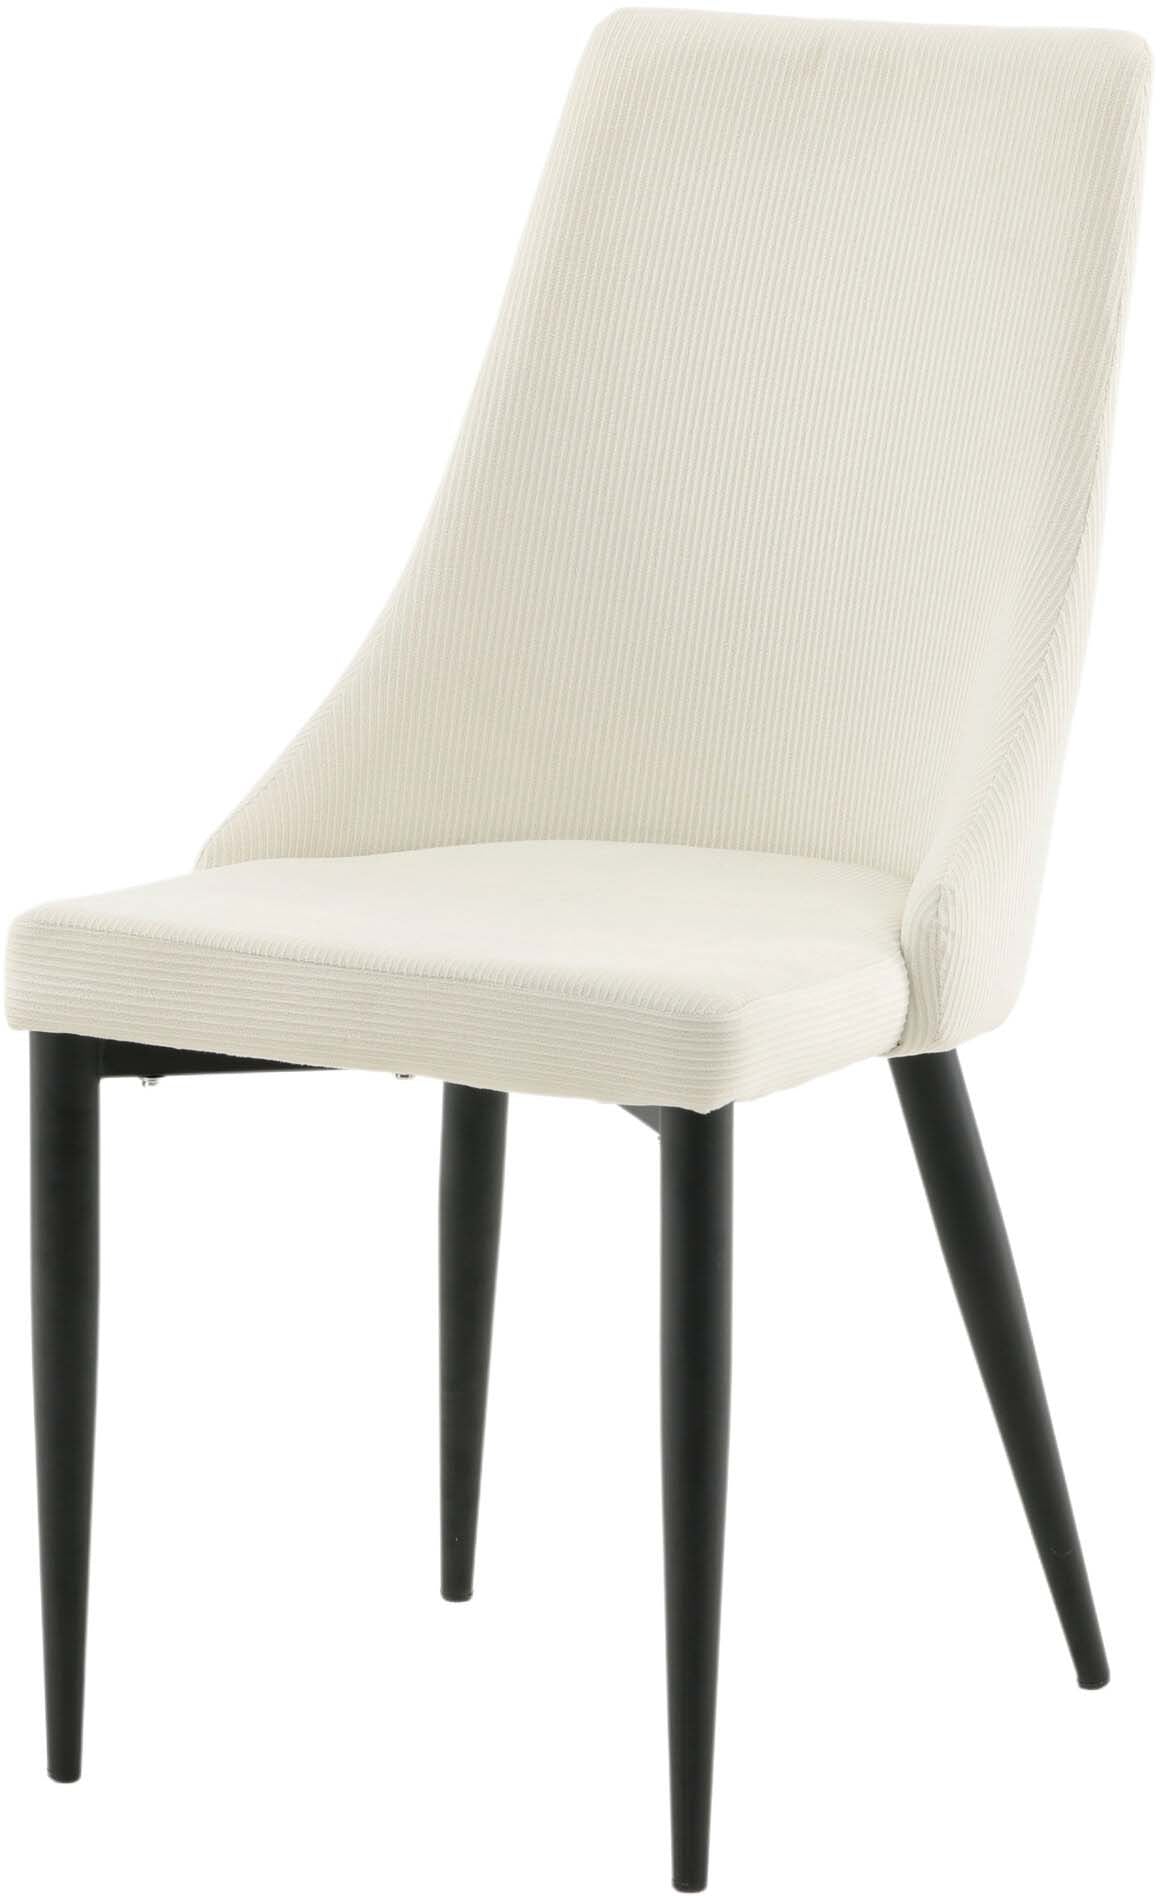 Leone Stuhl in Beige präsentiert im Onlineshop von KAQTU Design AG. Stuhl ist von Venture Home